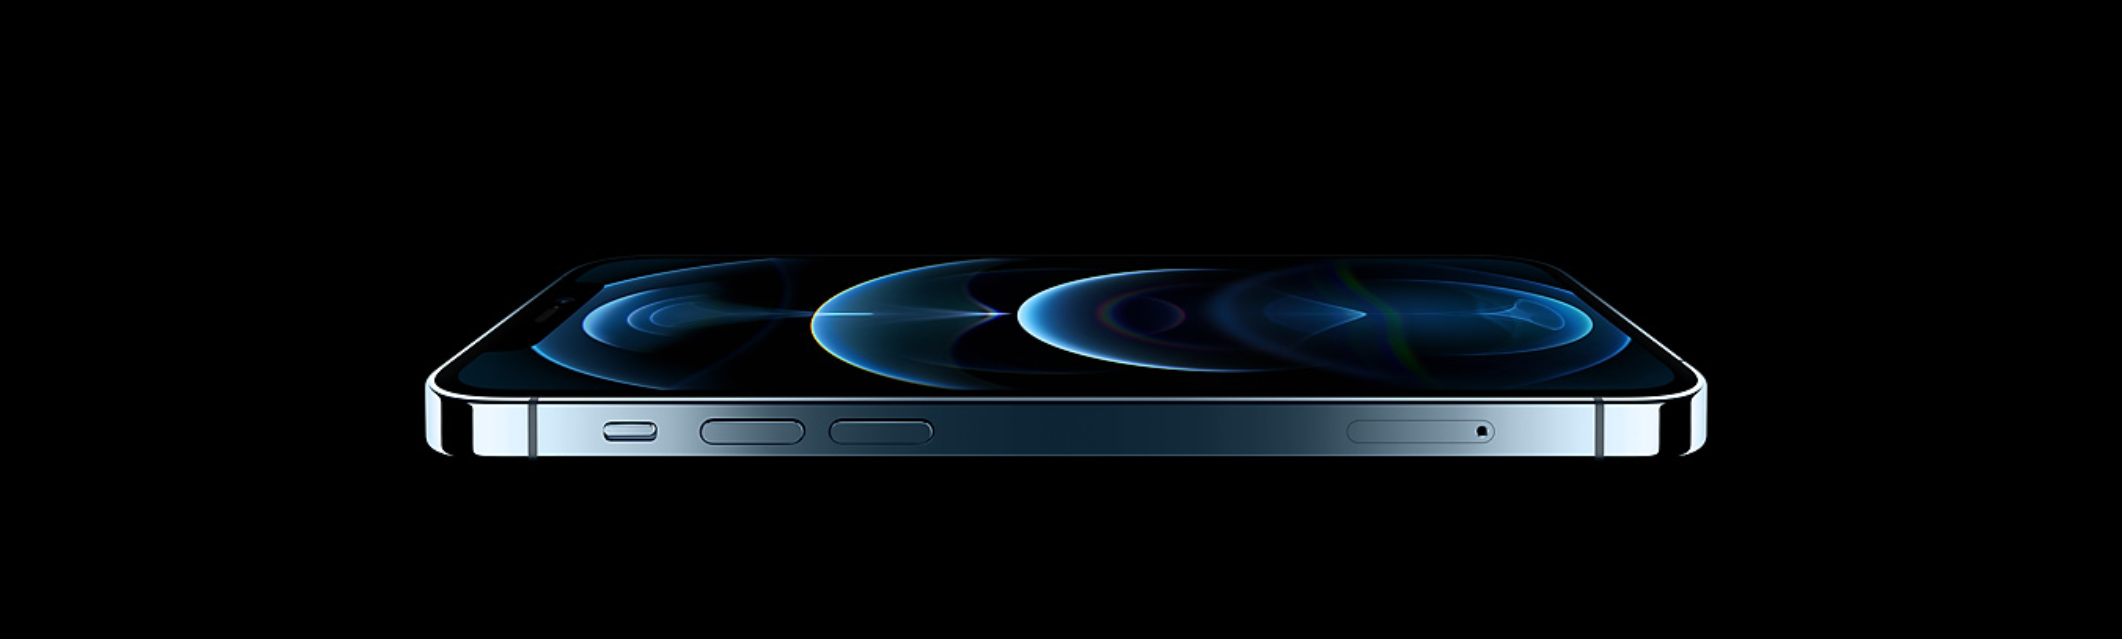 iPhone 12 Pro Max: Features, specs, price